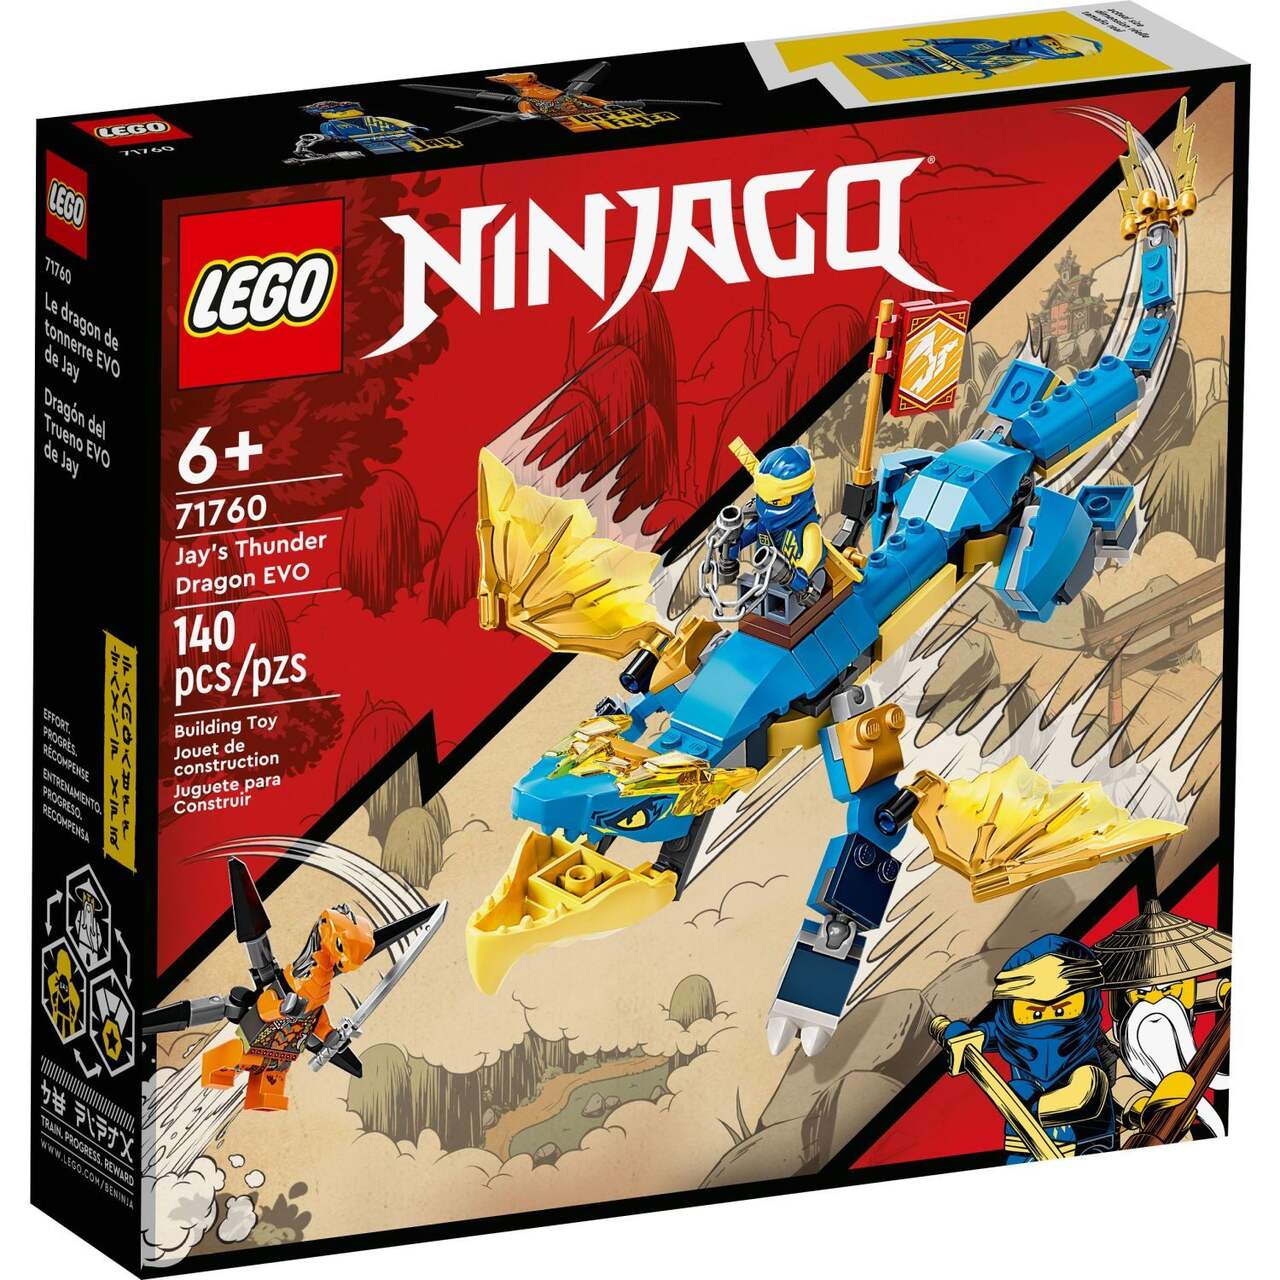 LEGO® NINJAGO® Jay's Thunder Dragon EVO - 71760, 140 pcs , Age 7+